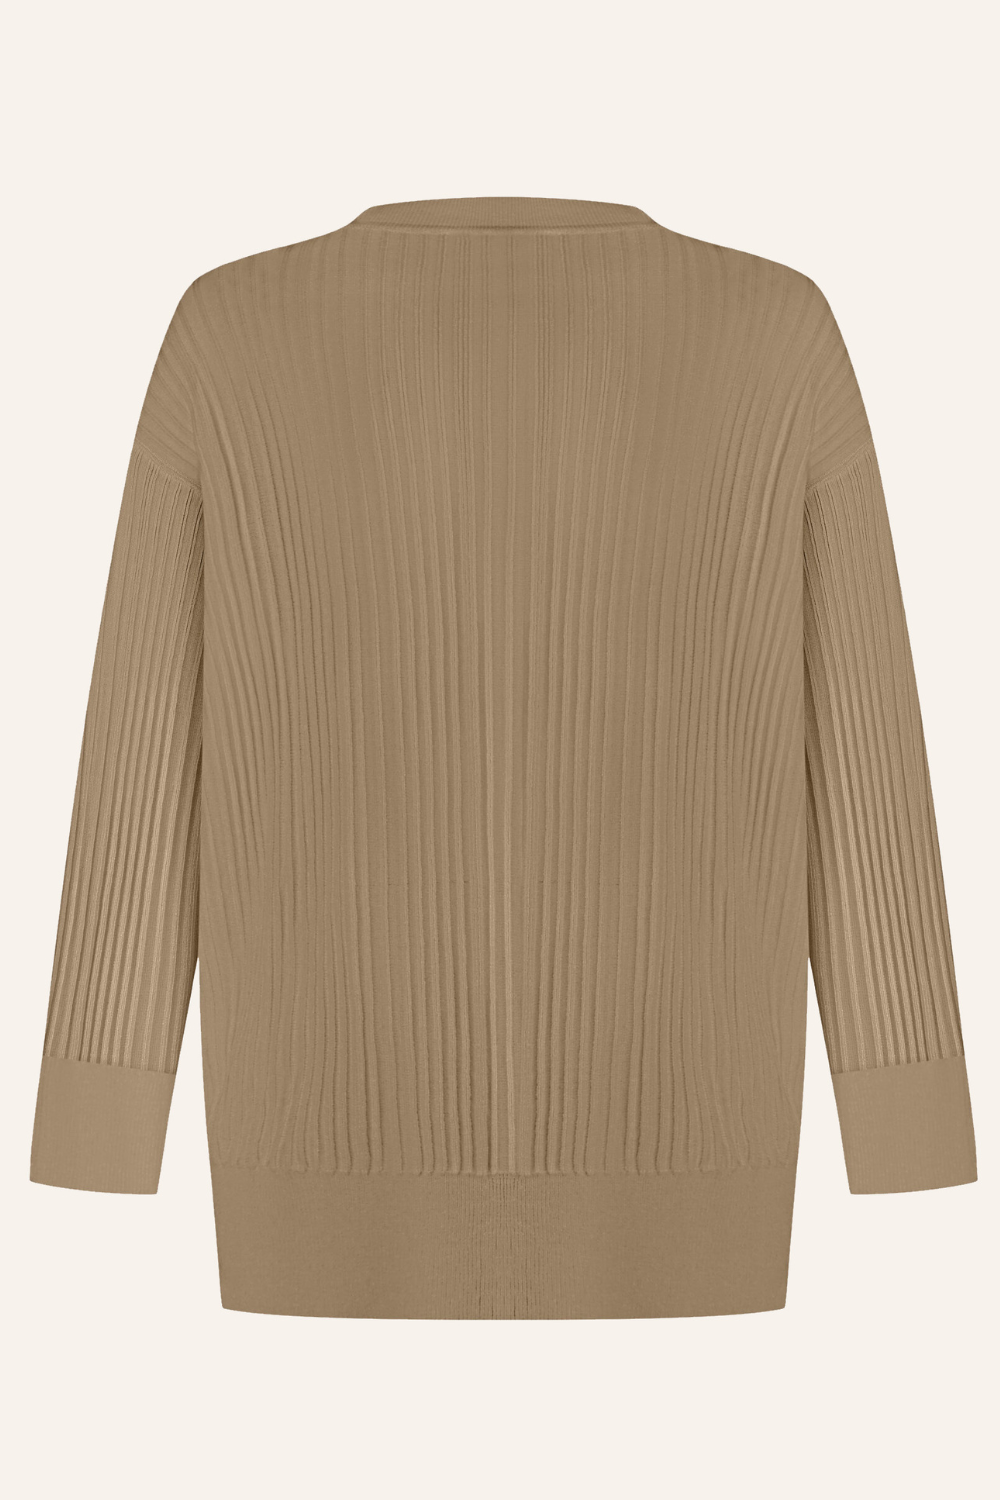 Knitted cardigan, beige (T.Mosca), GOL24-04